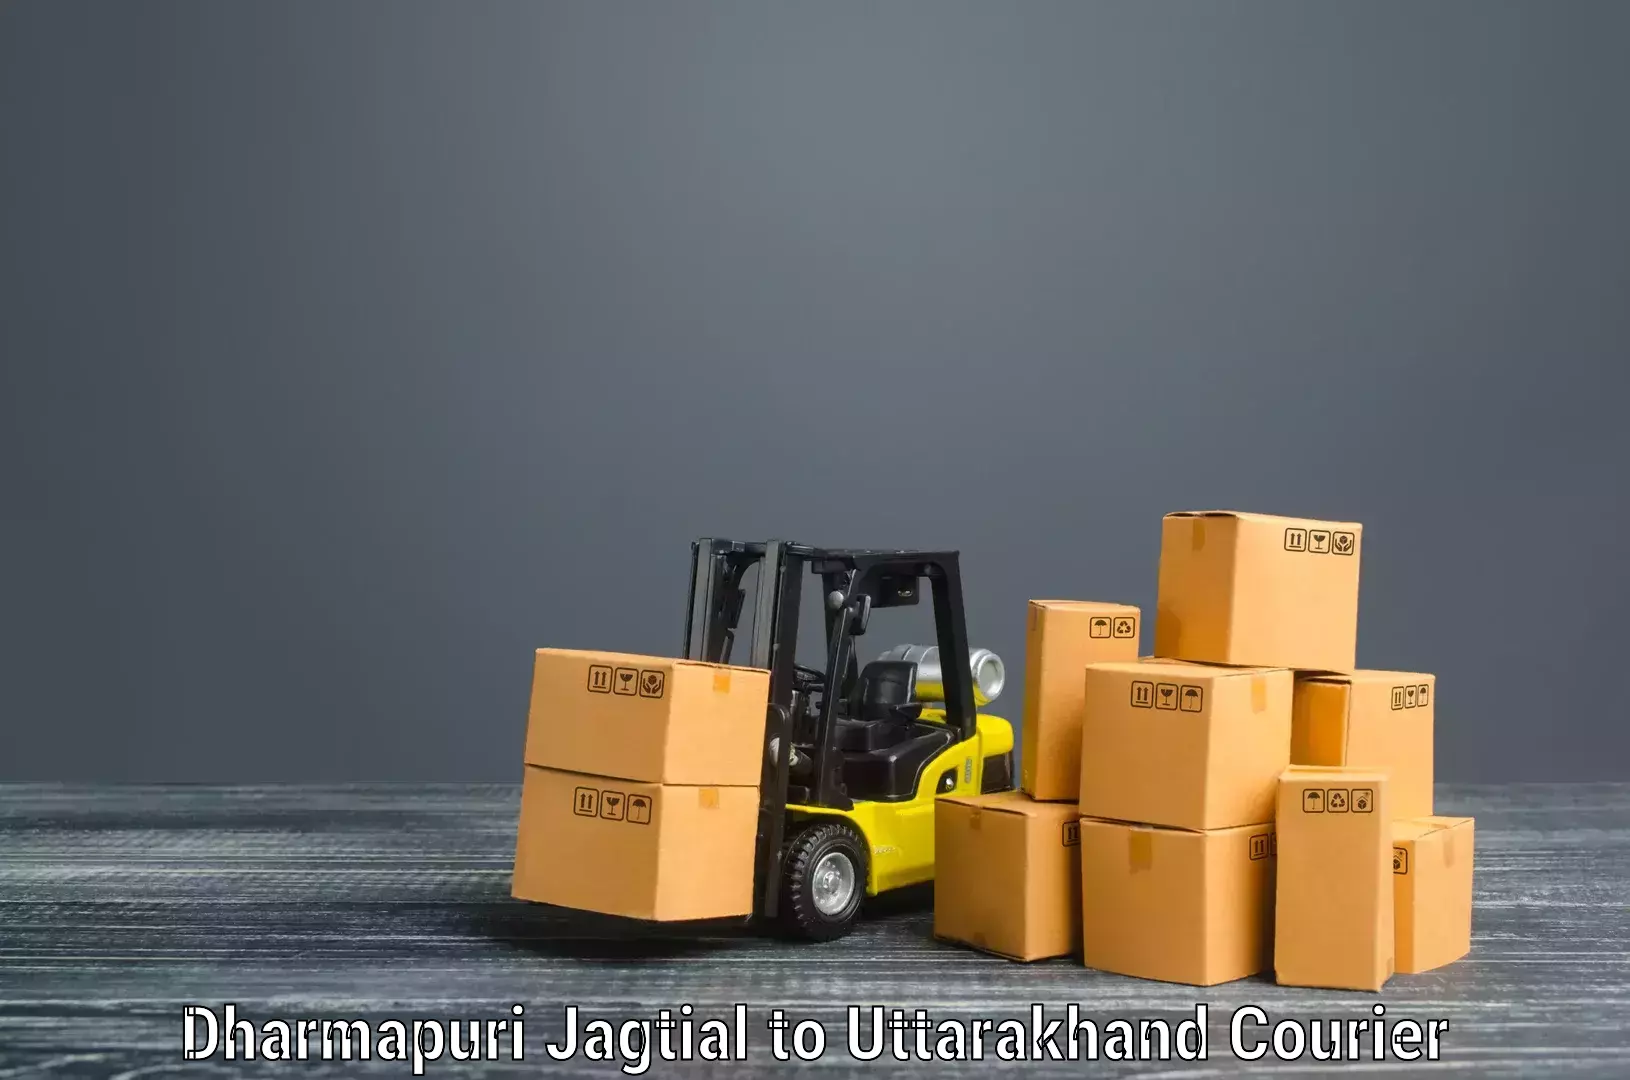 Quick moving services Dharmapuri Jagtial to Udham Singh Nagar